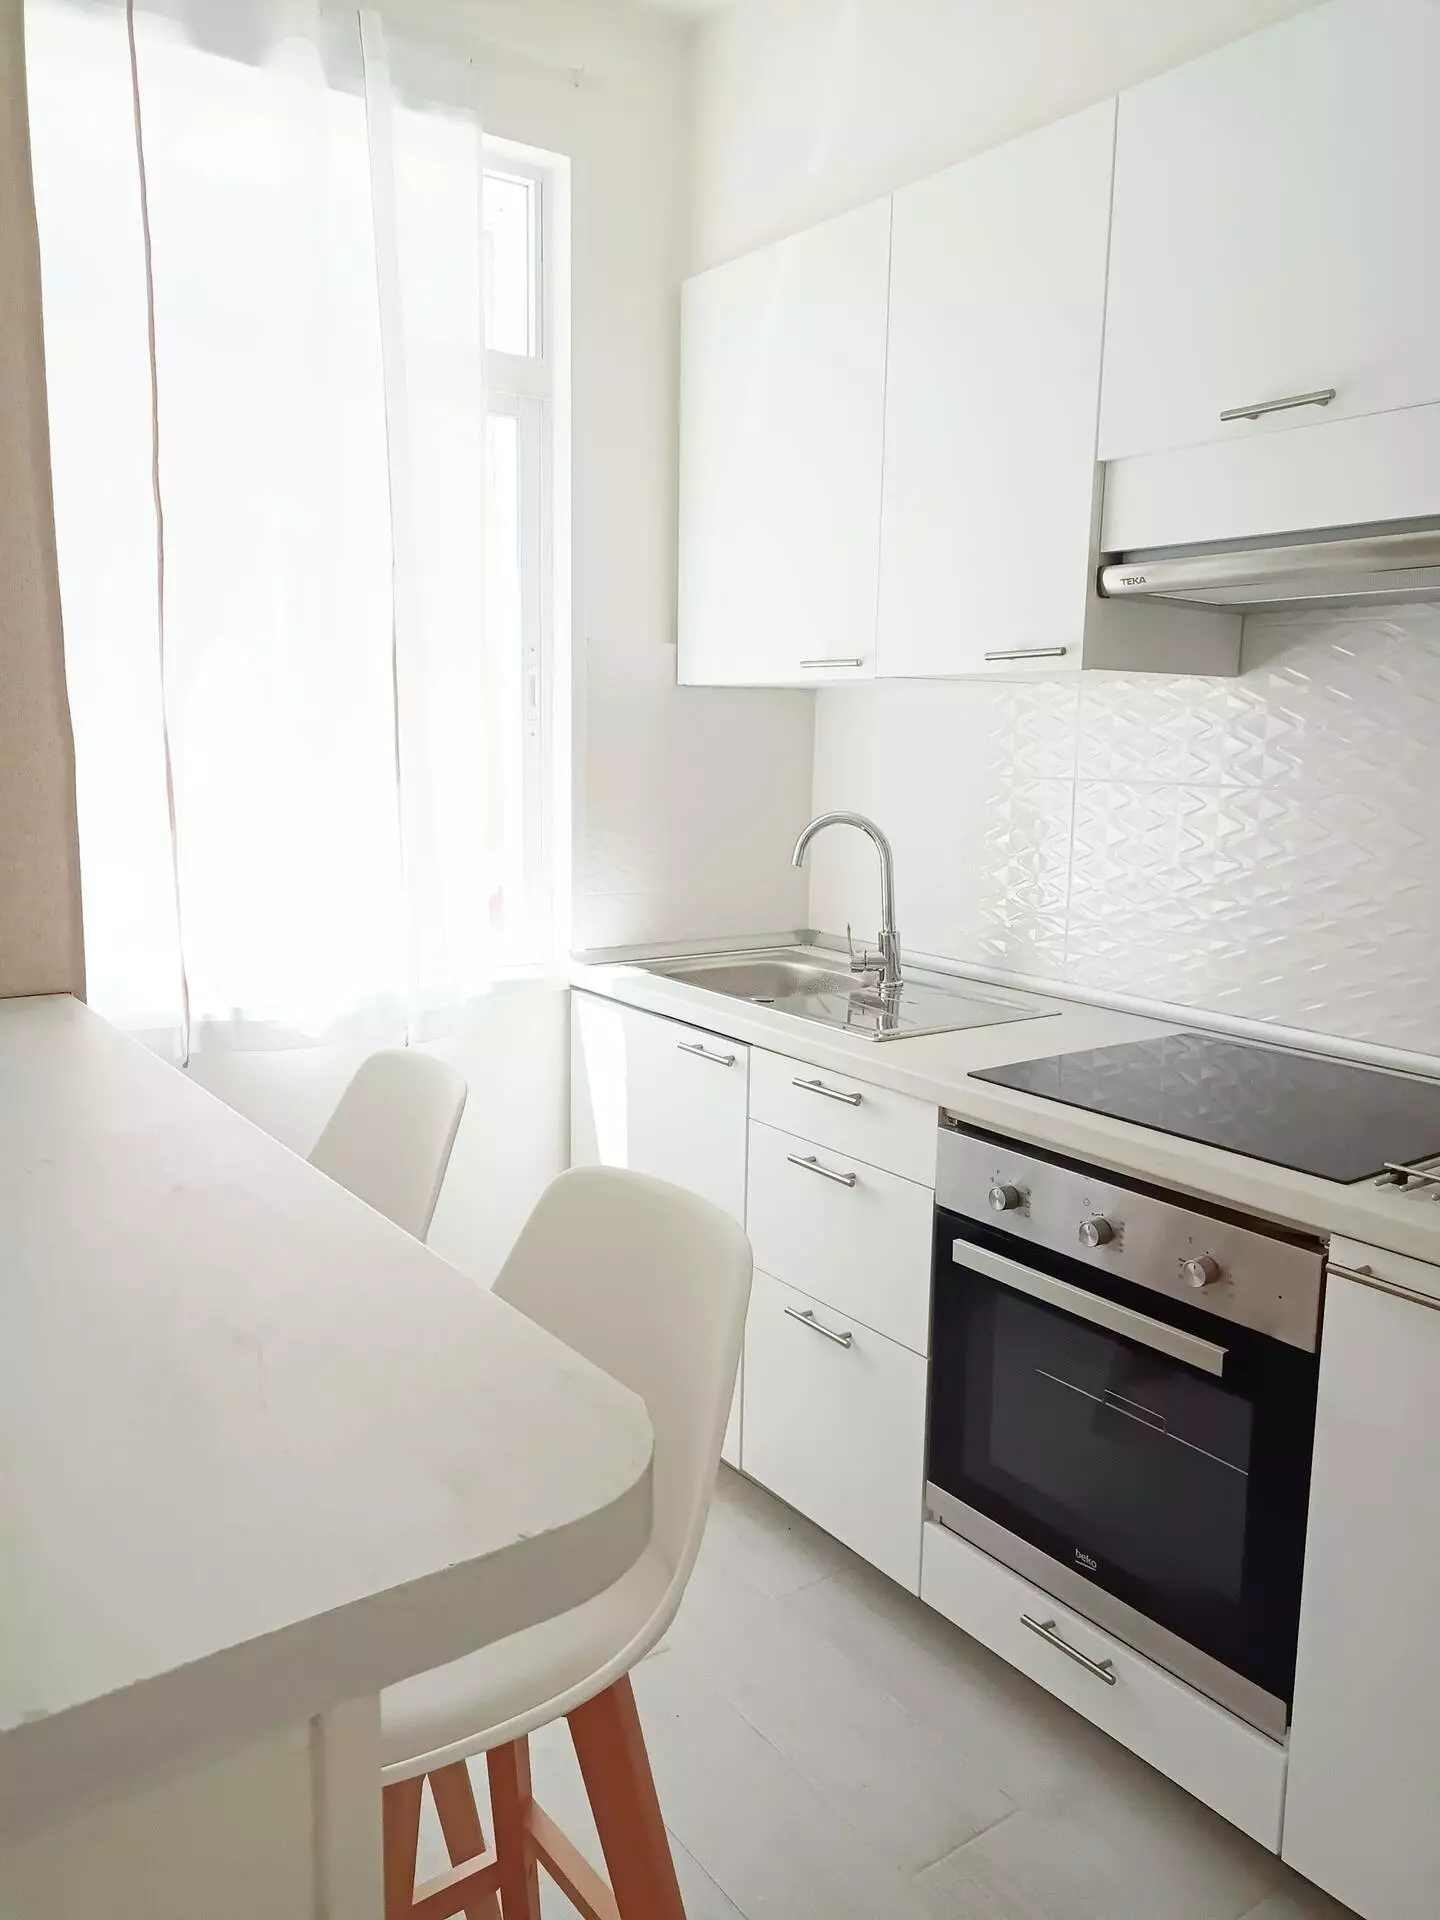 Detalle de la cocina del apartamento, muy luminosa, con barra y taburetes